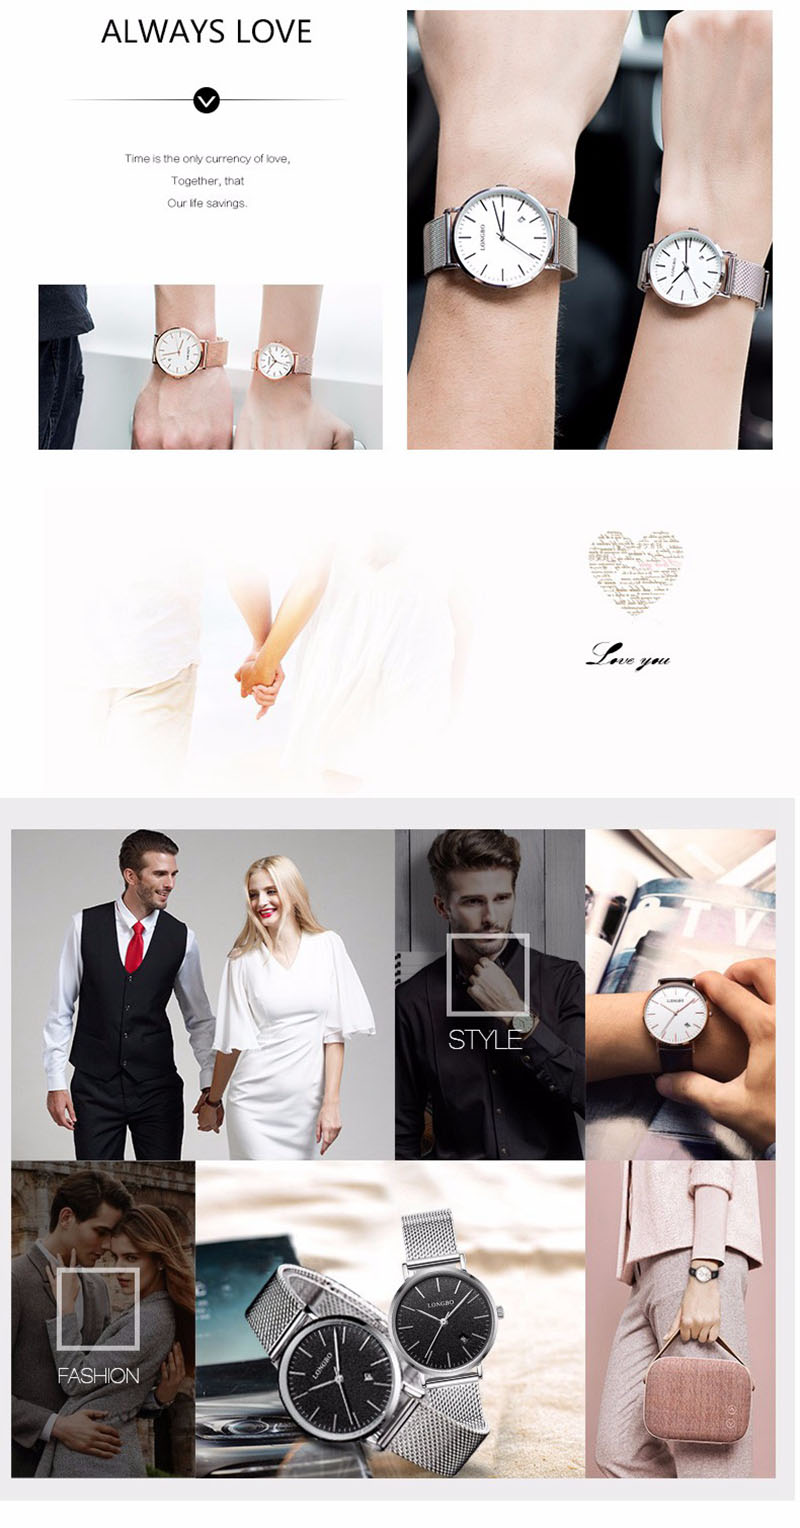 LONGBO-5009-Calendar-Lovers-Couple-Watch-Waterproof-Alloy-Case-Fashion-Simple-Wrist-Watch-1150890